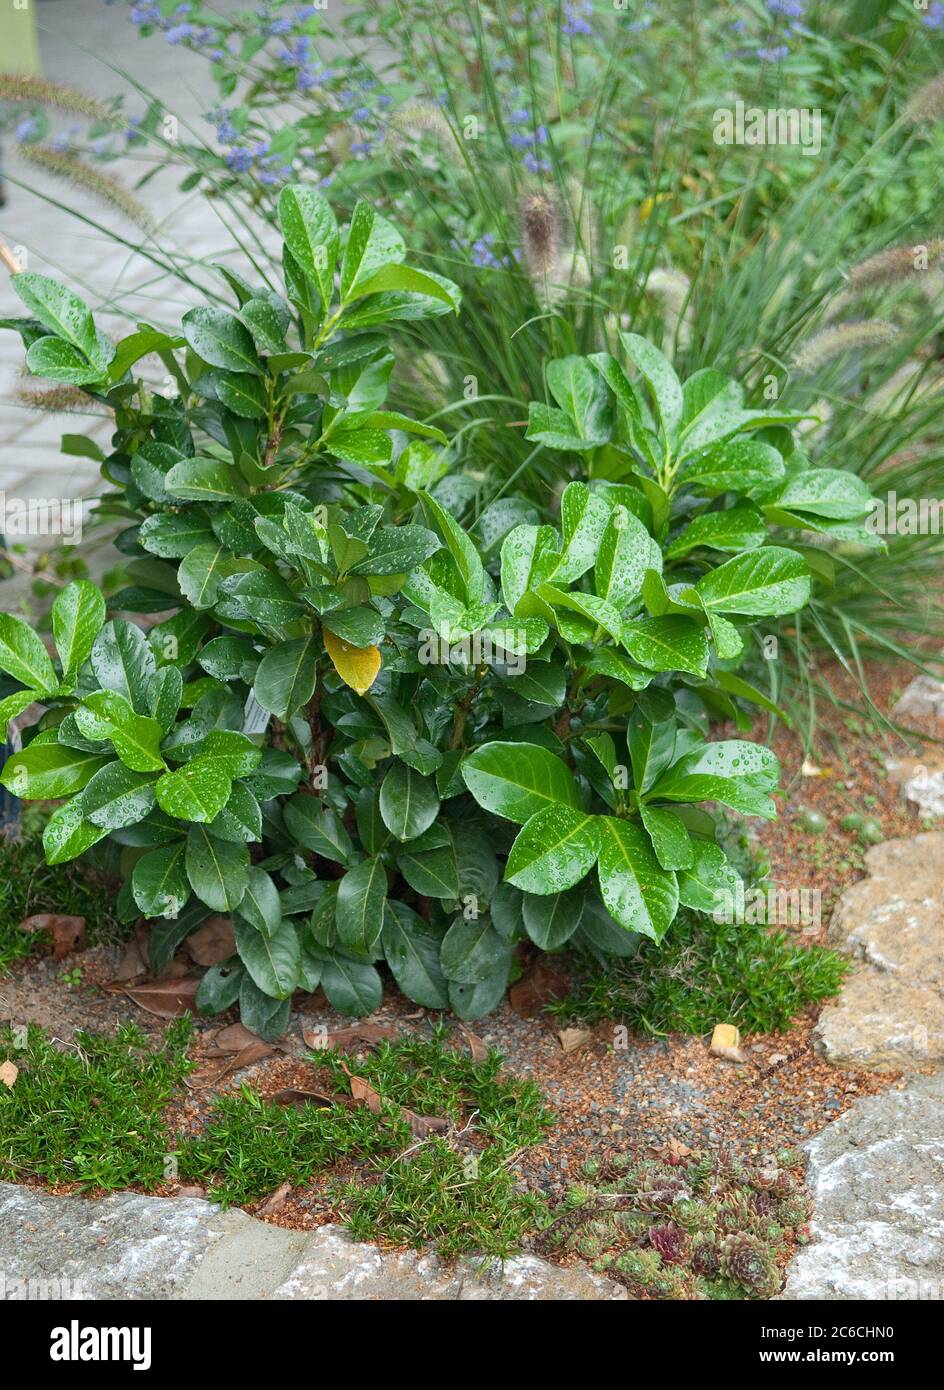 Lorbeerkirsche, Prunus laurocerasus Rotundifolia, Laurel, Prunus laurocerasus Rotundifolia Stockfoto